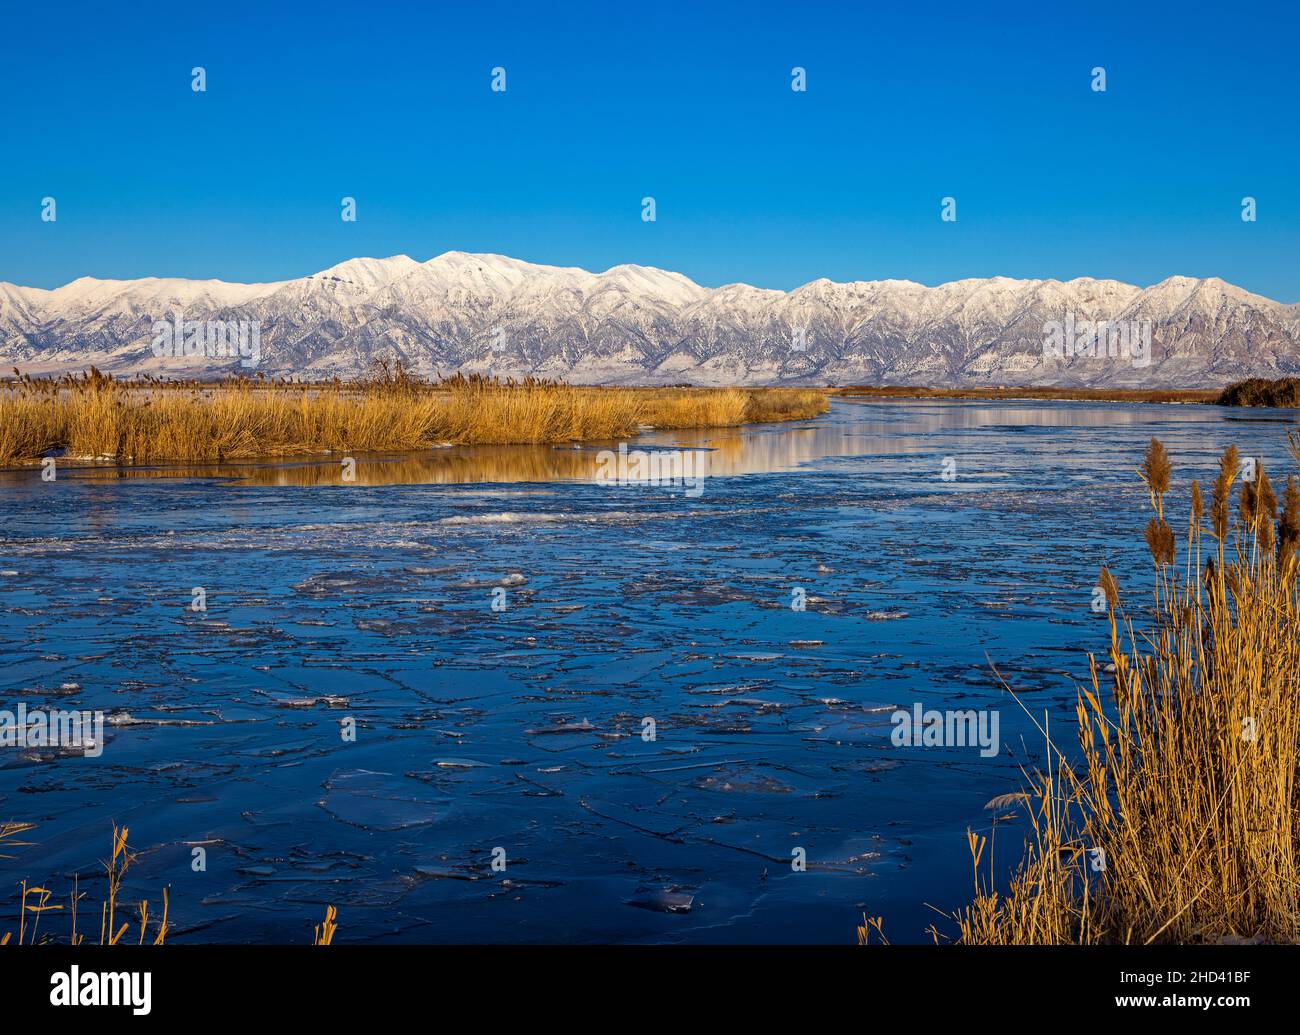 Cette vue donne sur la rivière Icy Bear dans les montagnes Wellsville depuis le refuge d'oiseaux migrateurs de Bear River, Brigham City, le comté de Box Elder, Utah, États-Unis. Banque D'Images